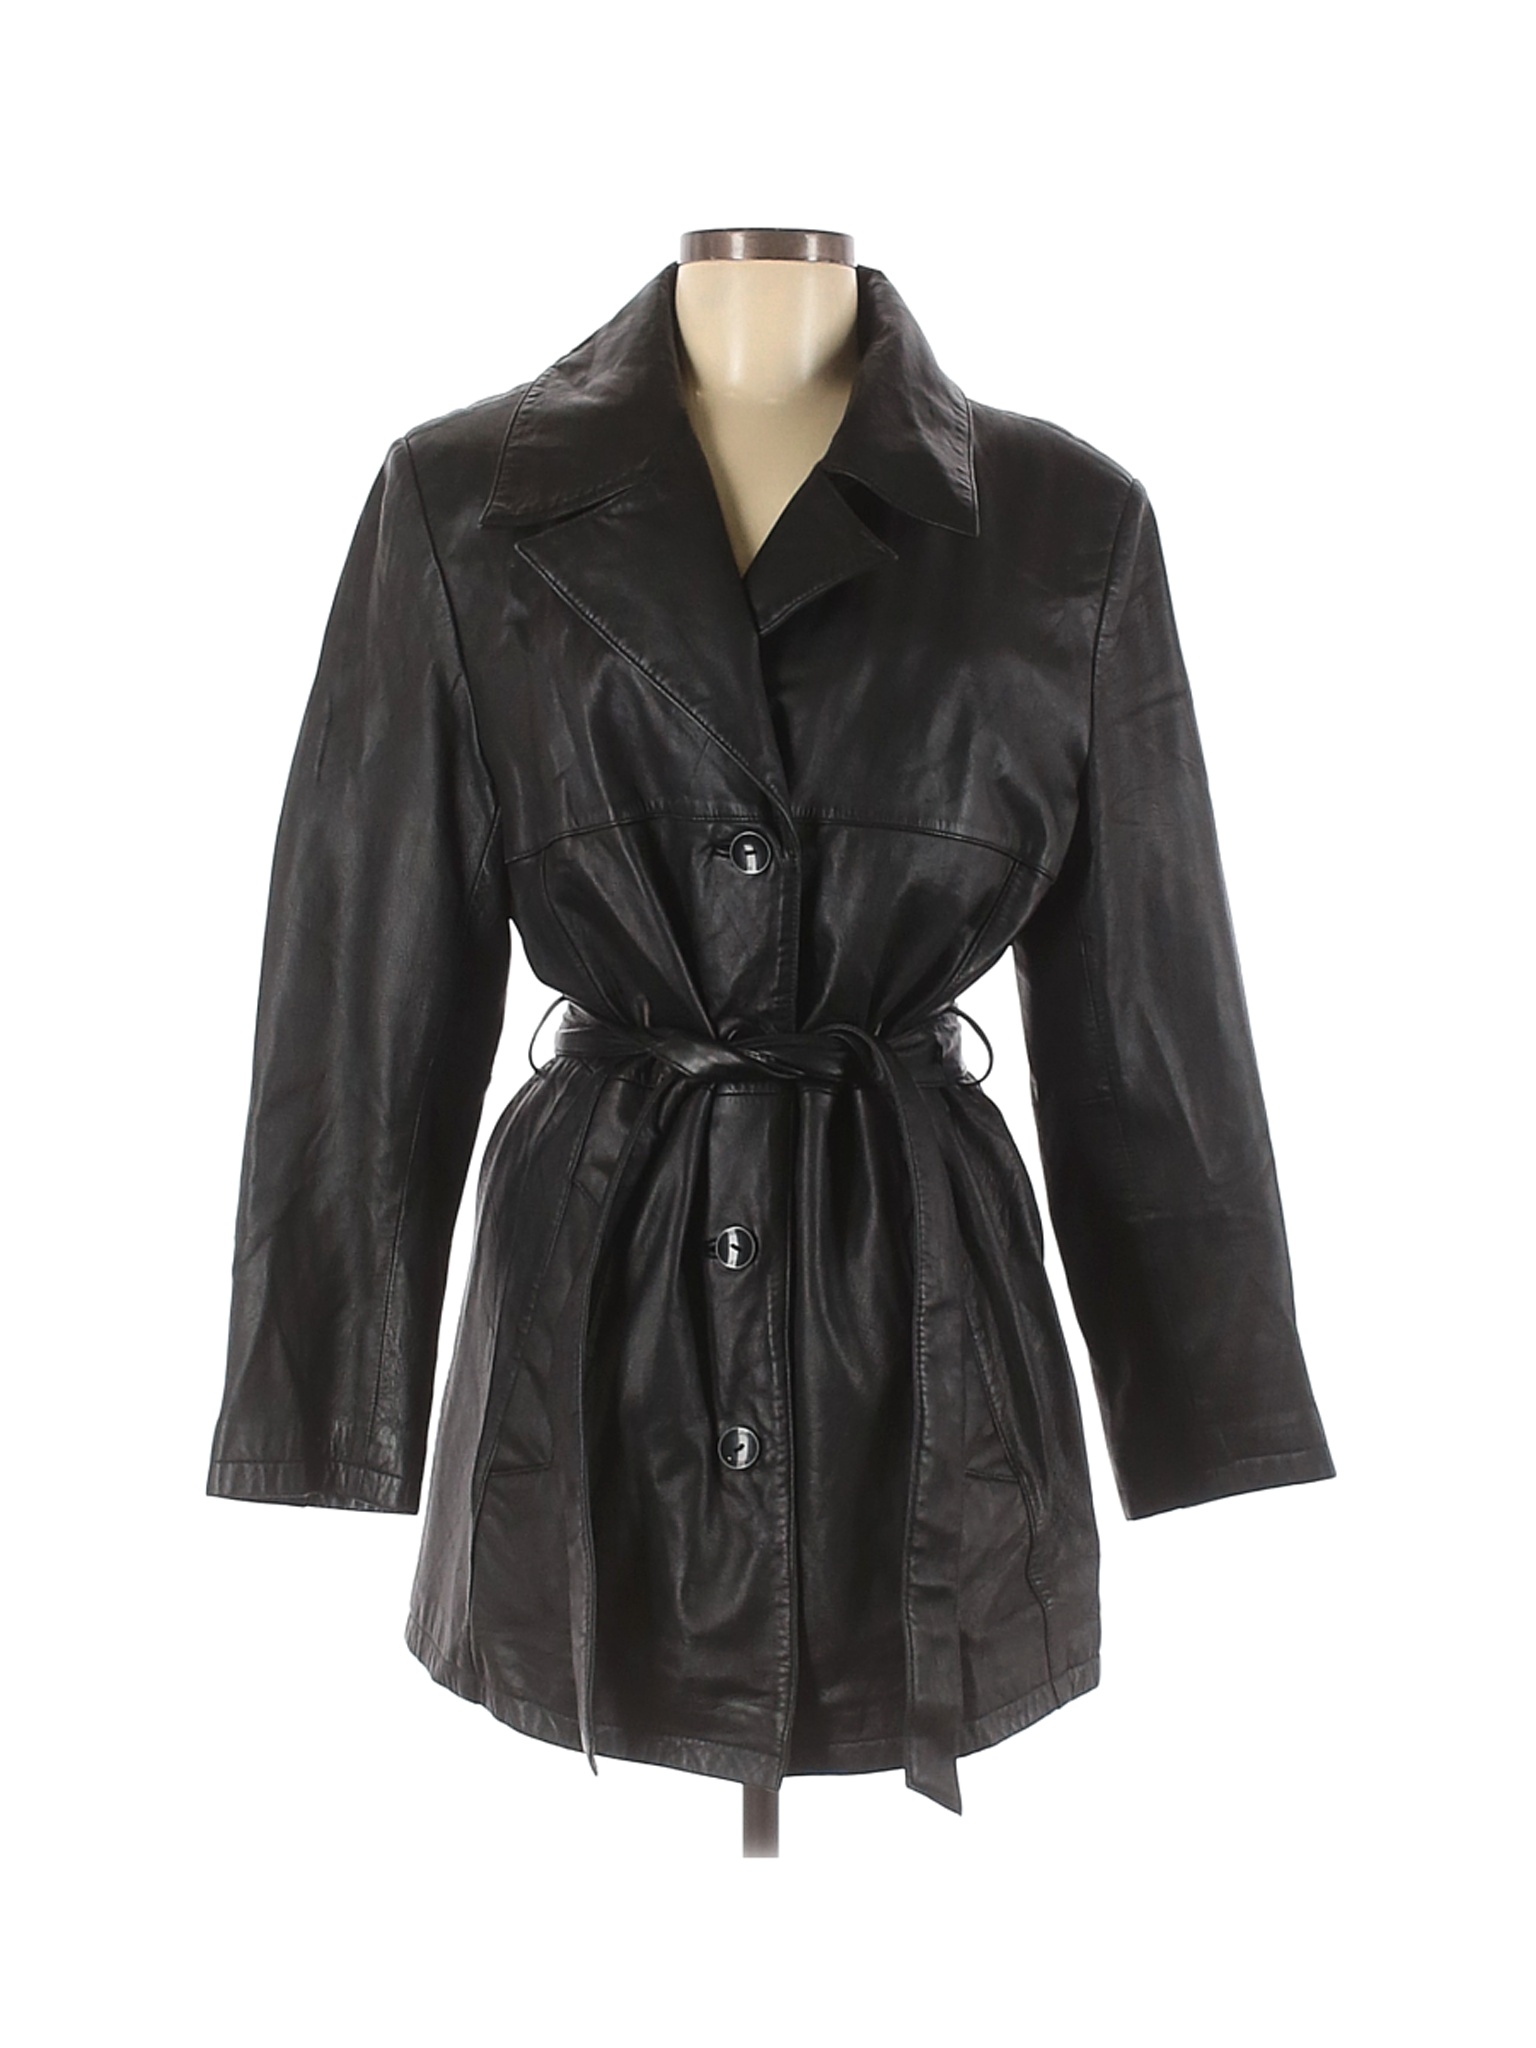 Pelle Studio Women Black Leather Jacket M | eBay